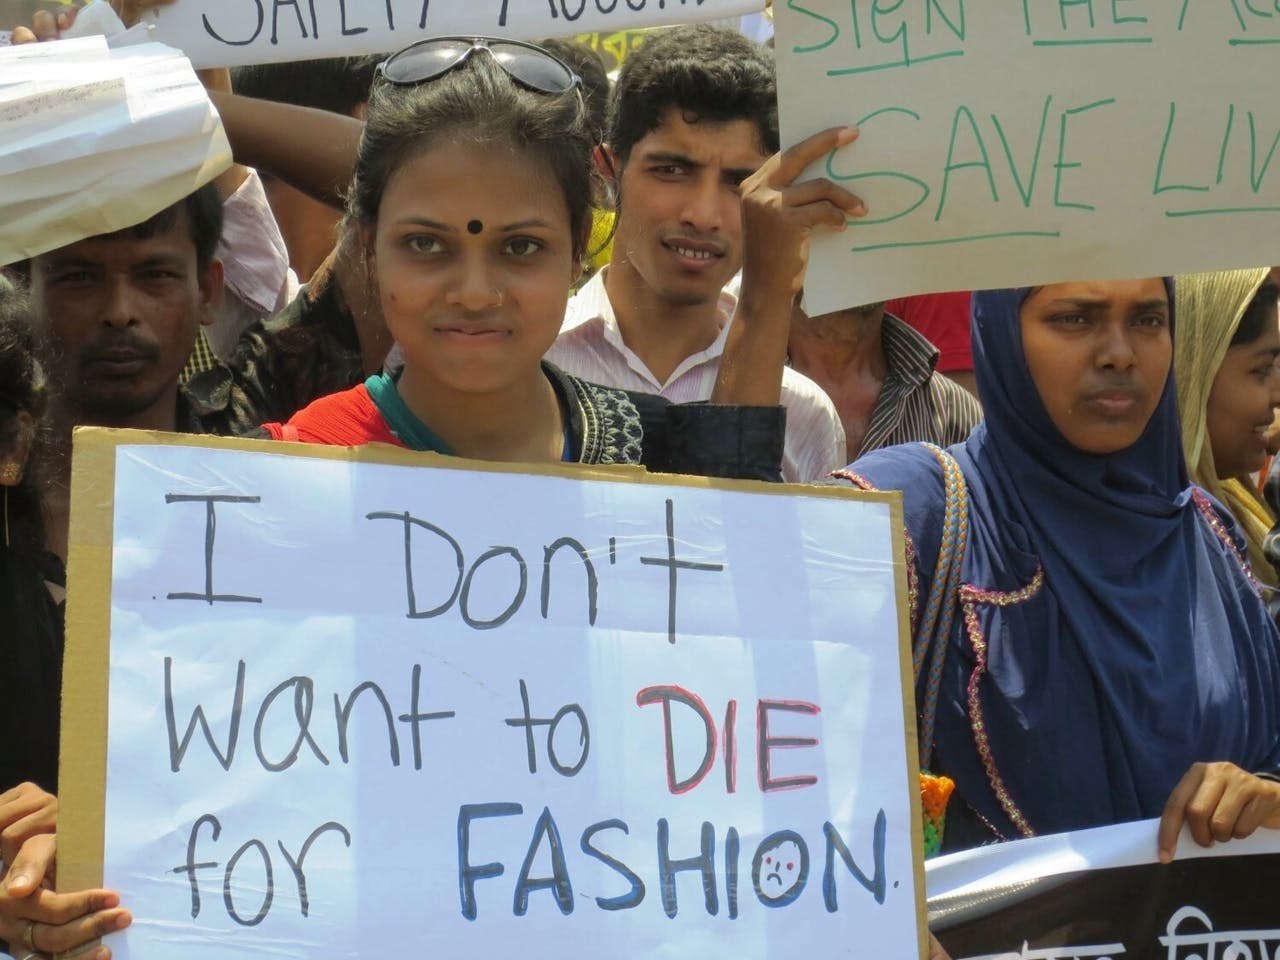 Een groep arbeiders protesteert tegen de kledingindustrie. Op hun bord staat de tekst 'I don't want to die for fashion'.